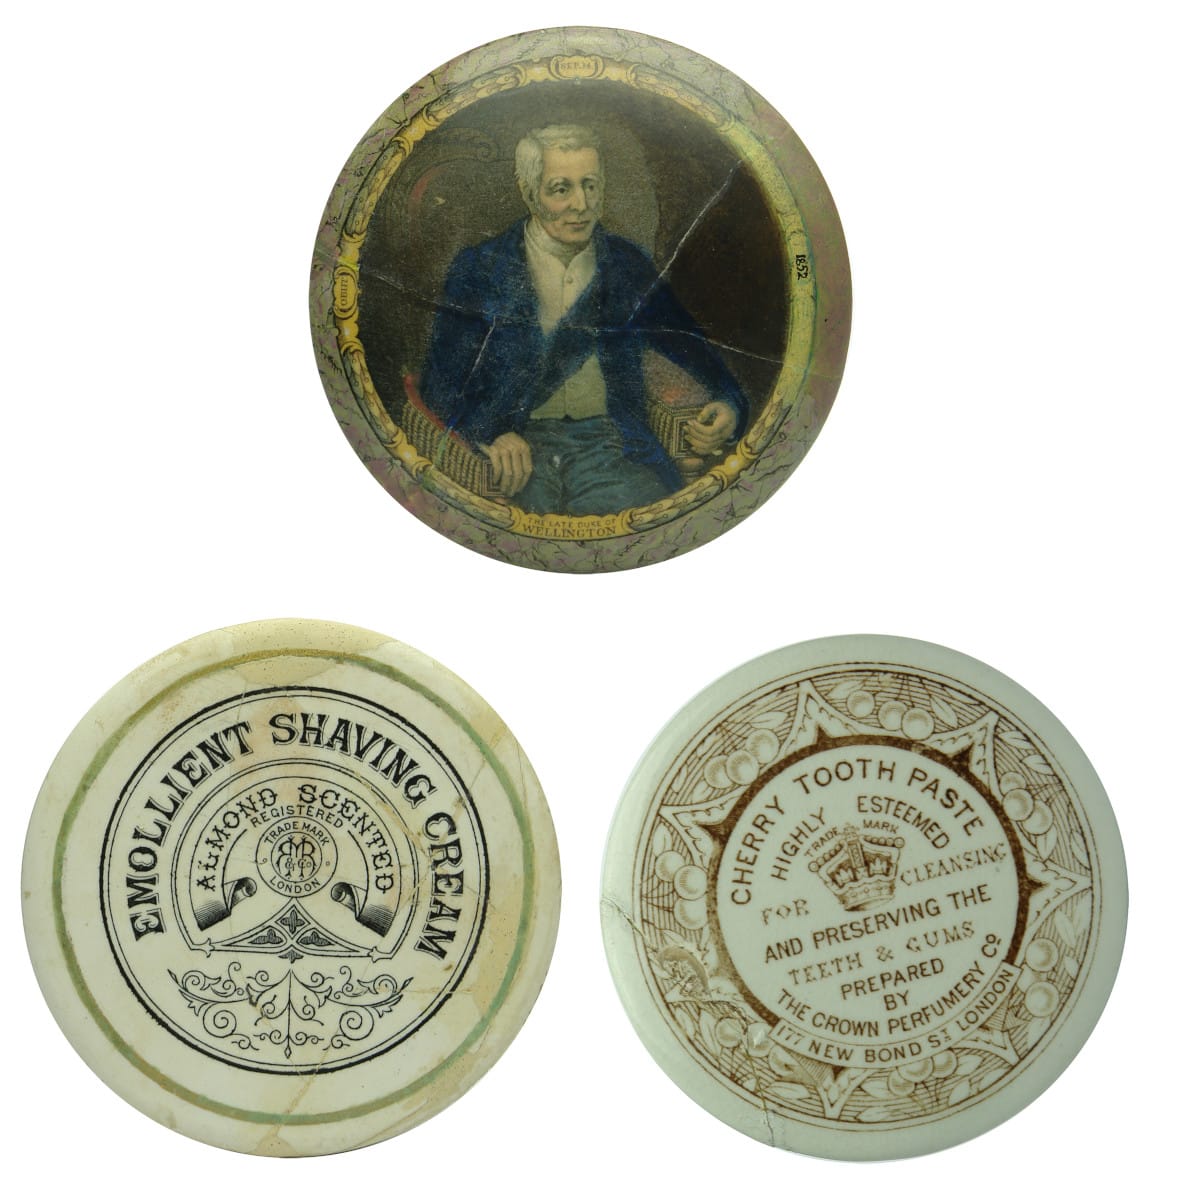 Three repaired Pot Lids: Duke of Wellington; May Roberts Chaving Cream; Crown Perfumery Cherry Tooth Paste.